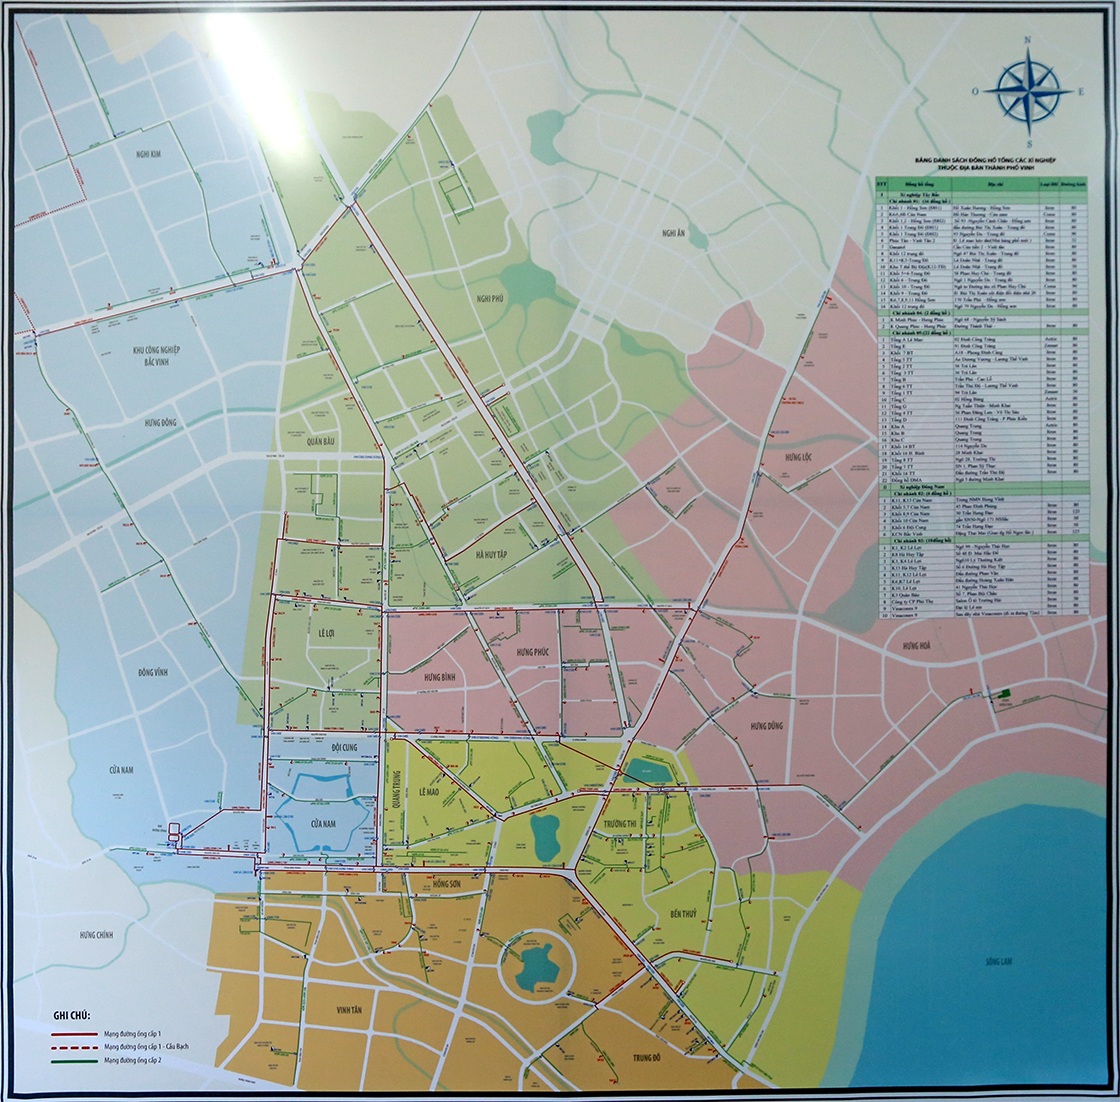 Mặt bằng tổng  thể mạng lưới đường ống cấp nước 1,2 tại thành phố Vinh.